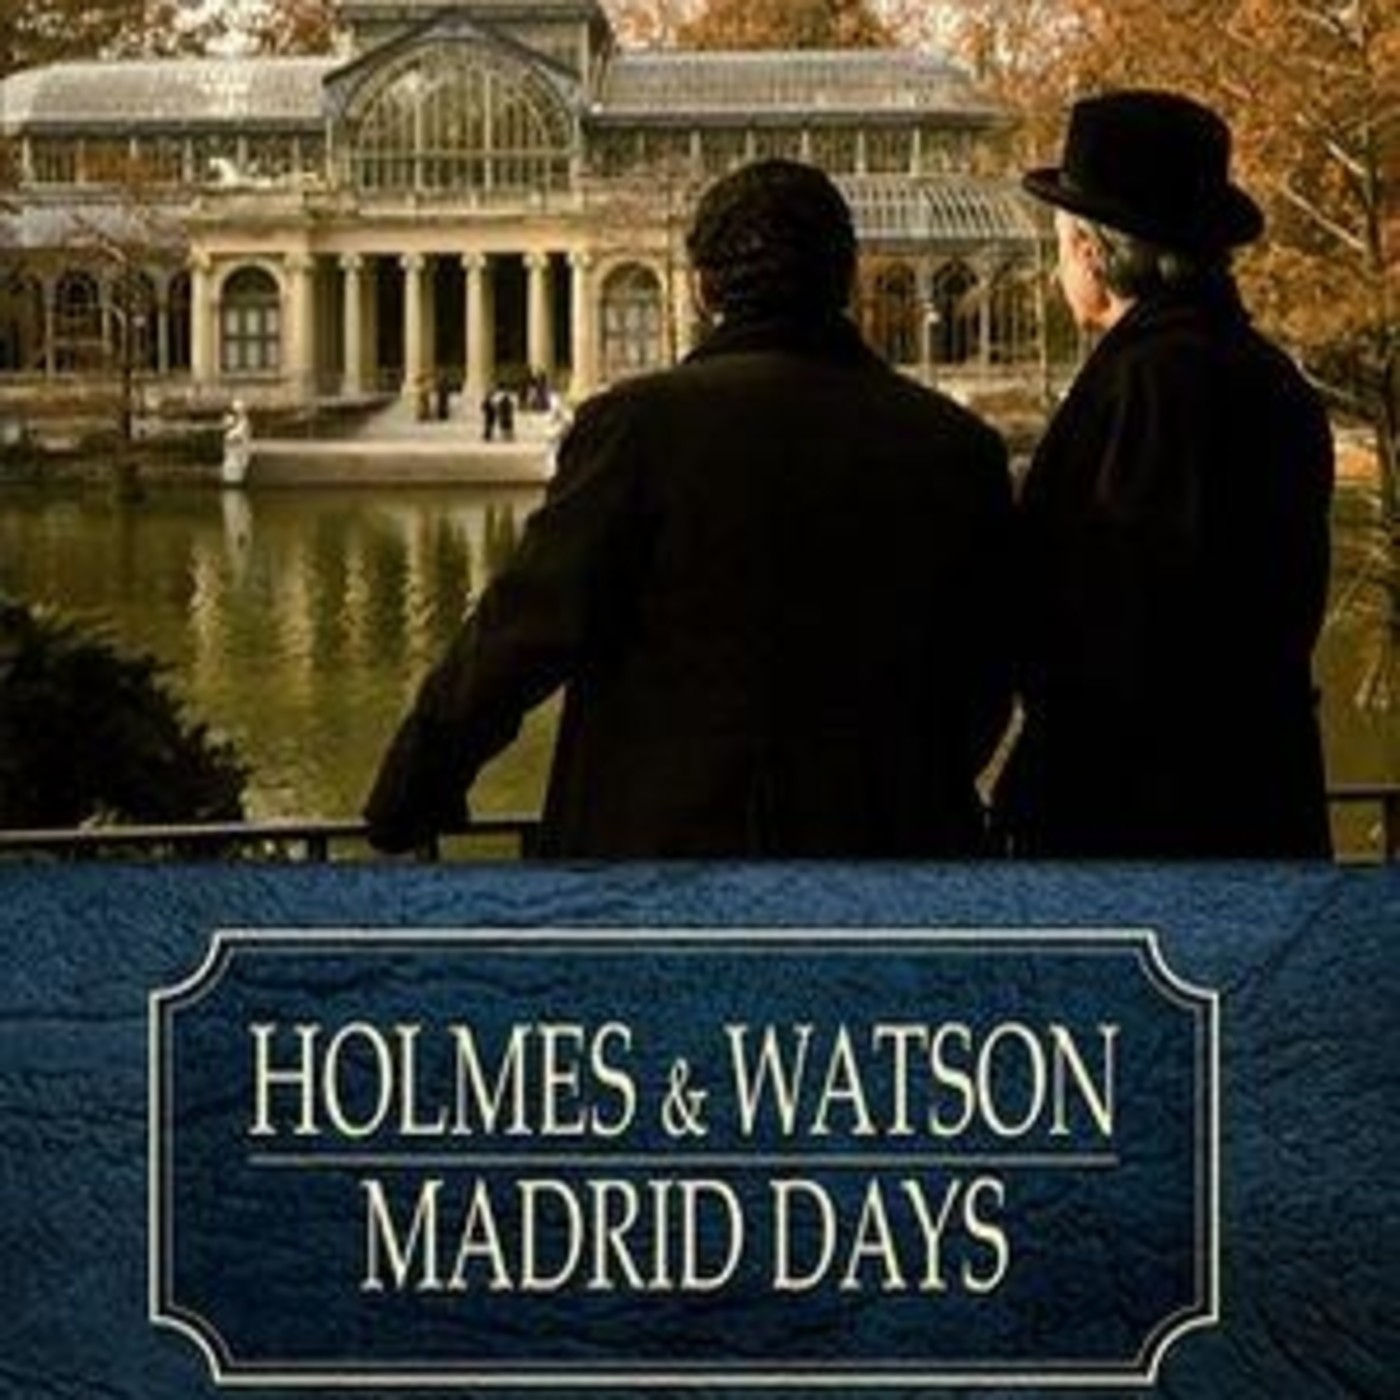 Holmes Watson Madrid Days Audesc Pelicula Intriga Crimen 2012 En Escuchando Peliculas En Mp3 11 07 A Las 10 48 34 02 06 16 19730173 Ivoox